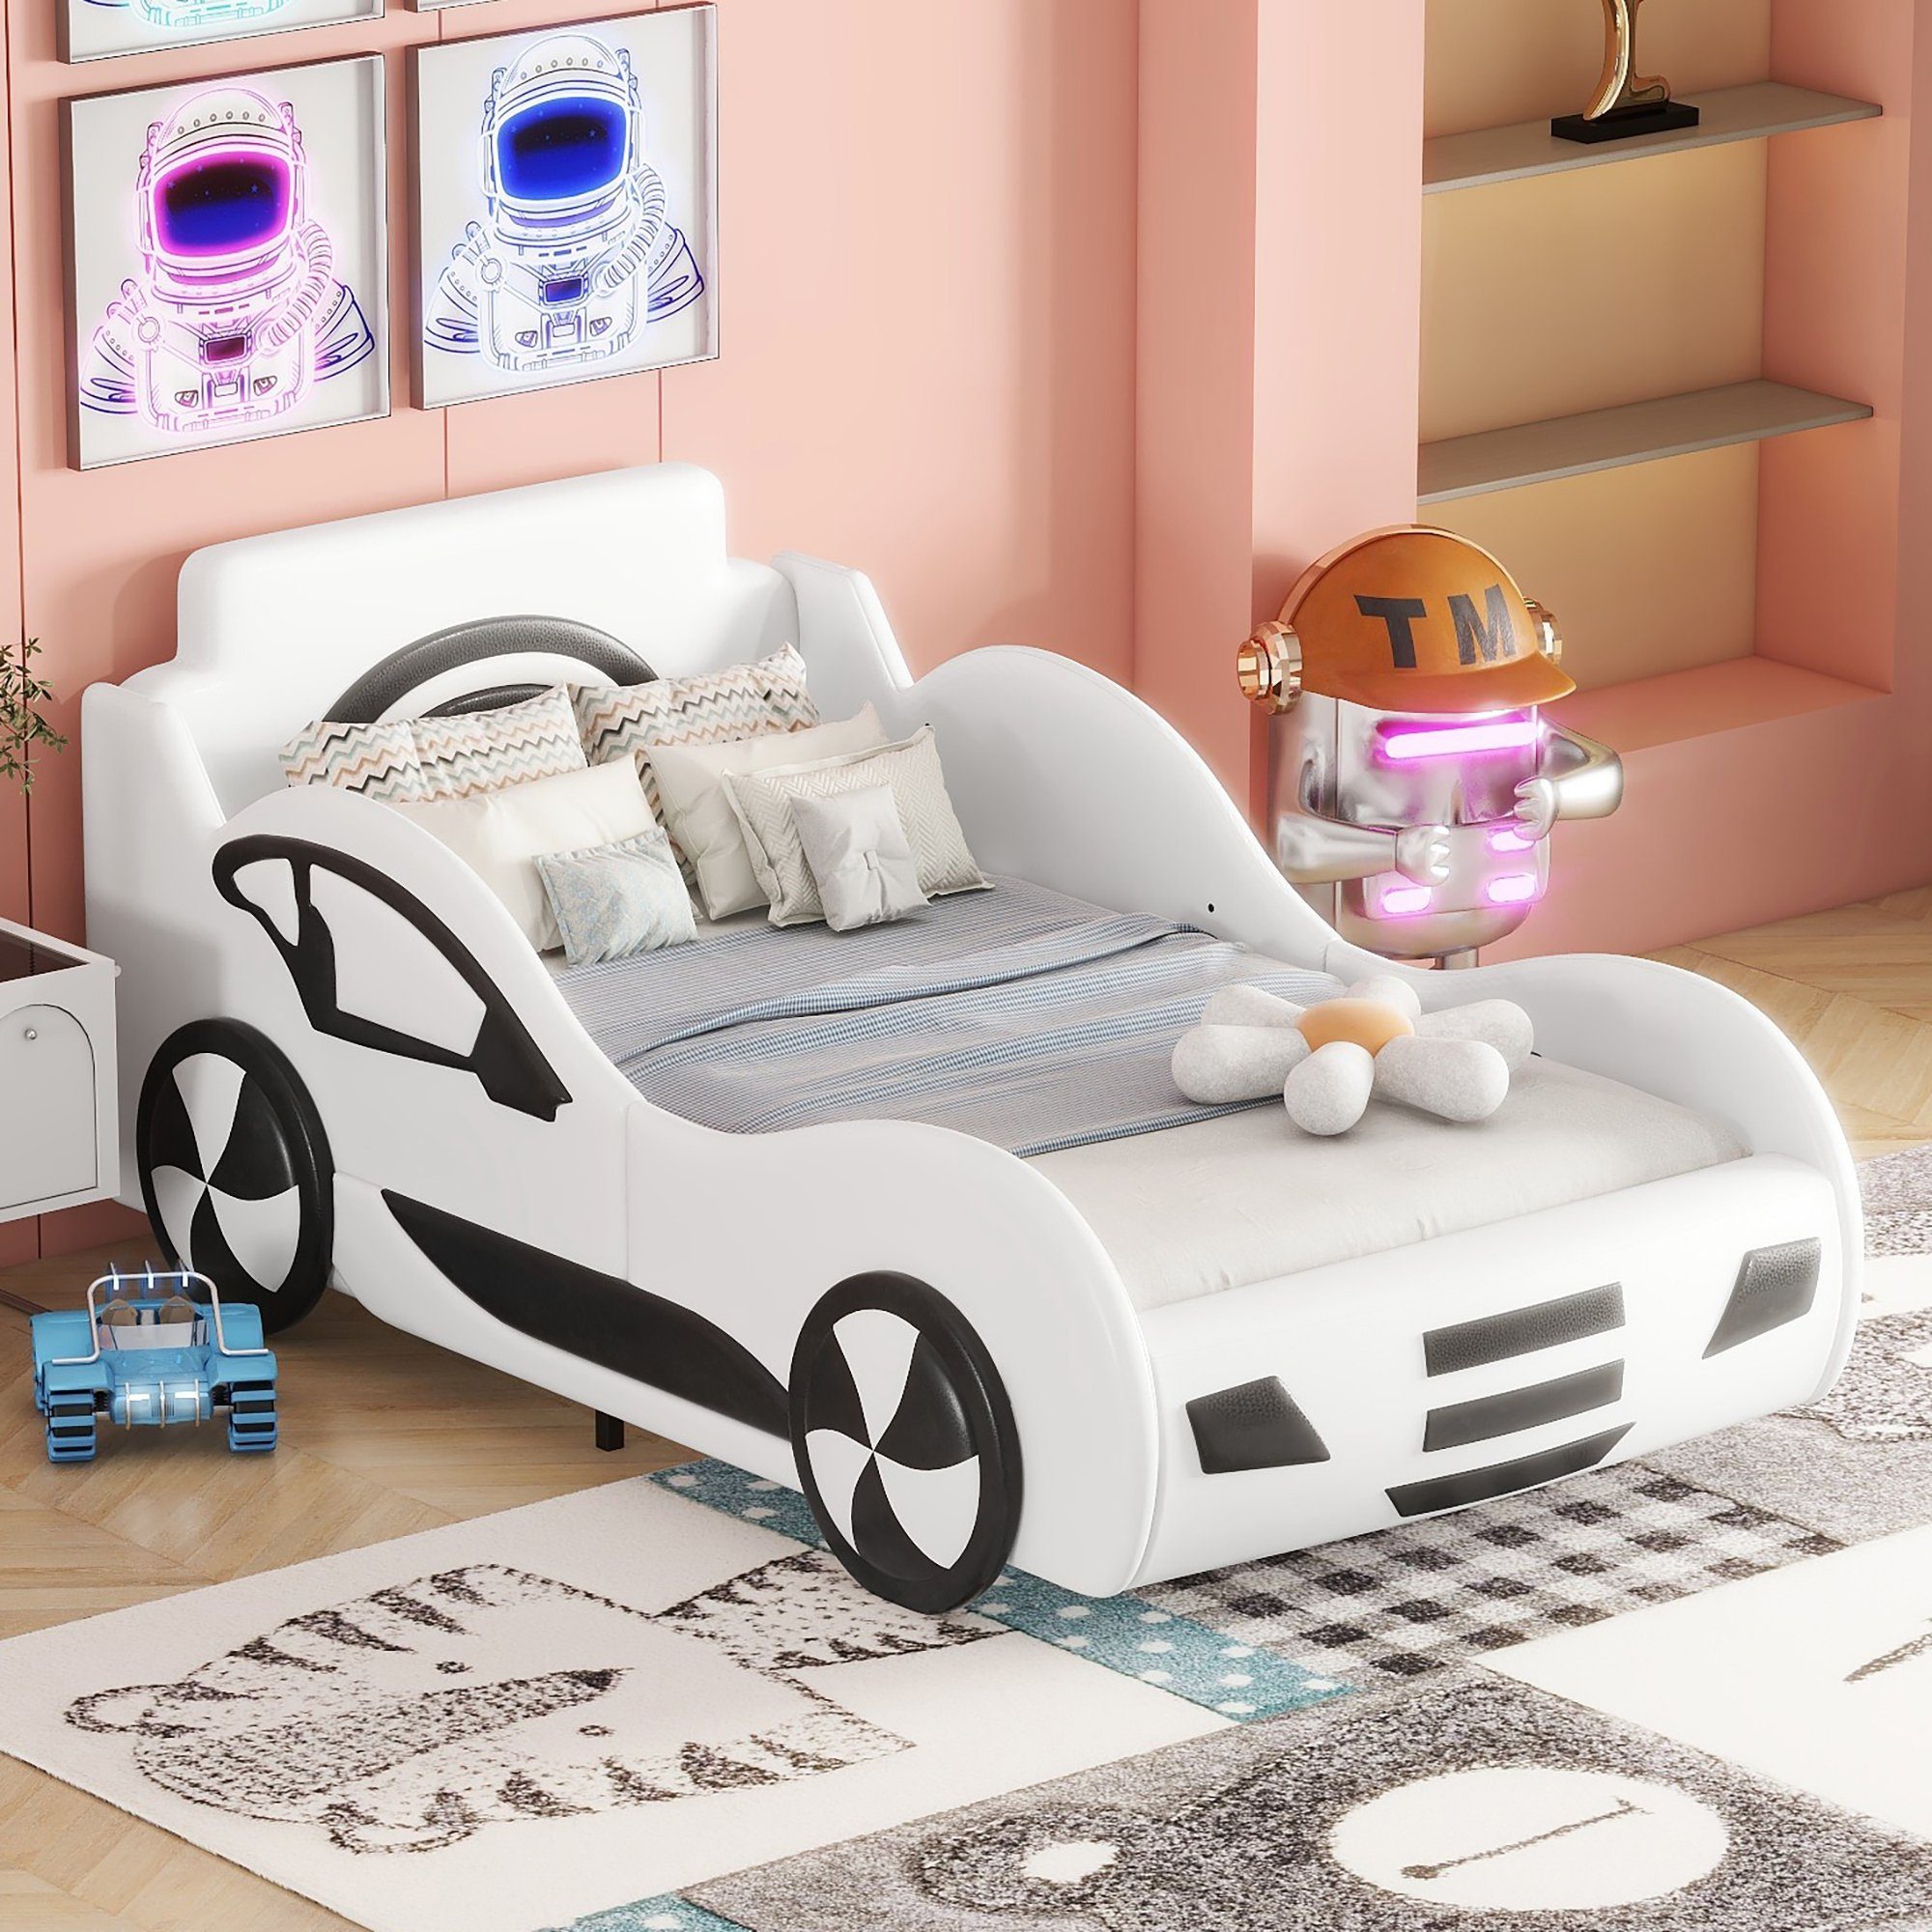 Fangqi Autobett 90x200cm Automodell Einzelbett mit großem Bettkasten unter Lattenrost (Familienbett,Auto-Modellbetten, Autobetten, Kinderbetten, Schwarz/Weiß)